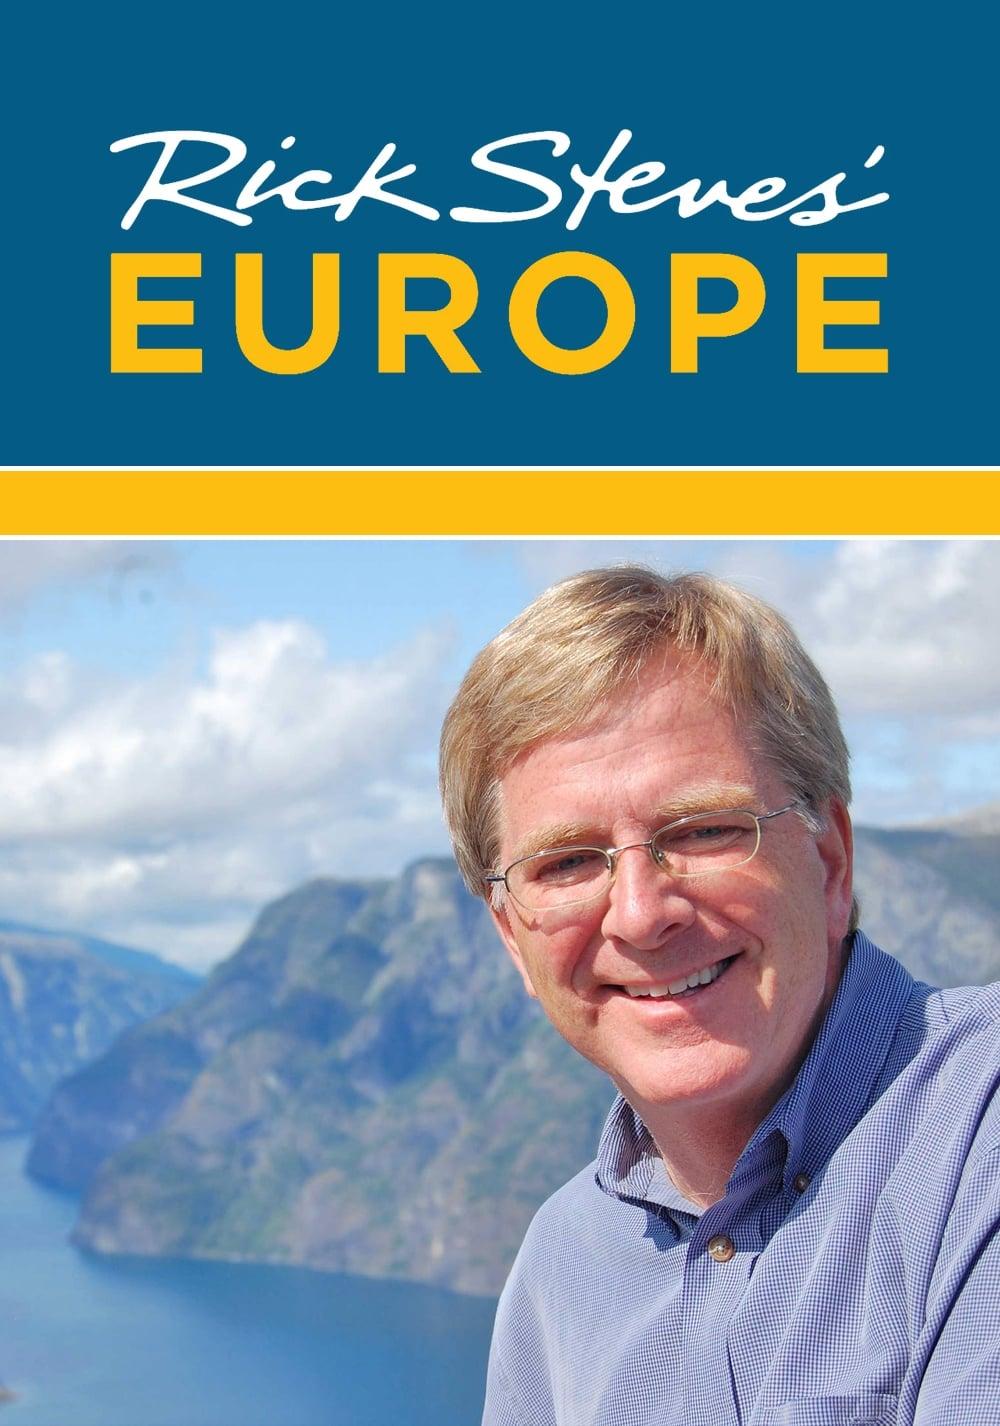 Rick Steves' Europe poster